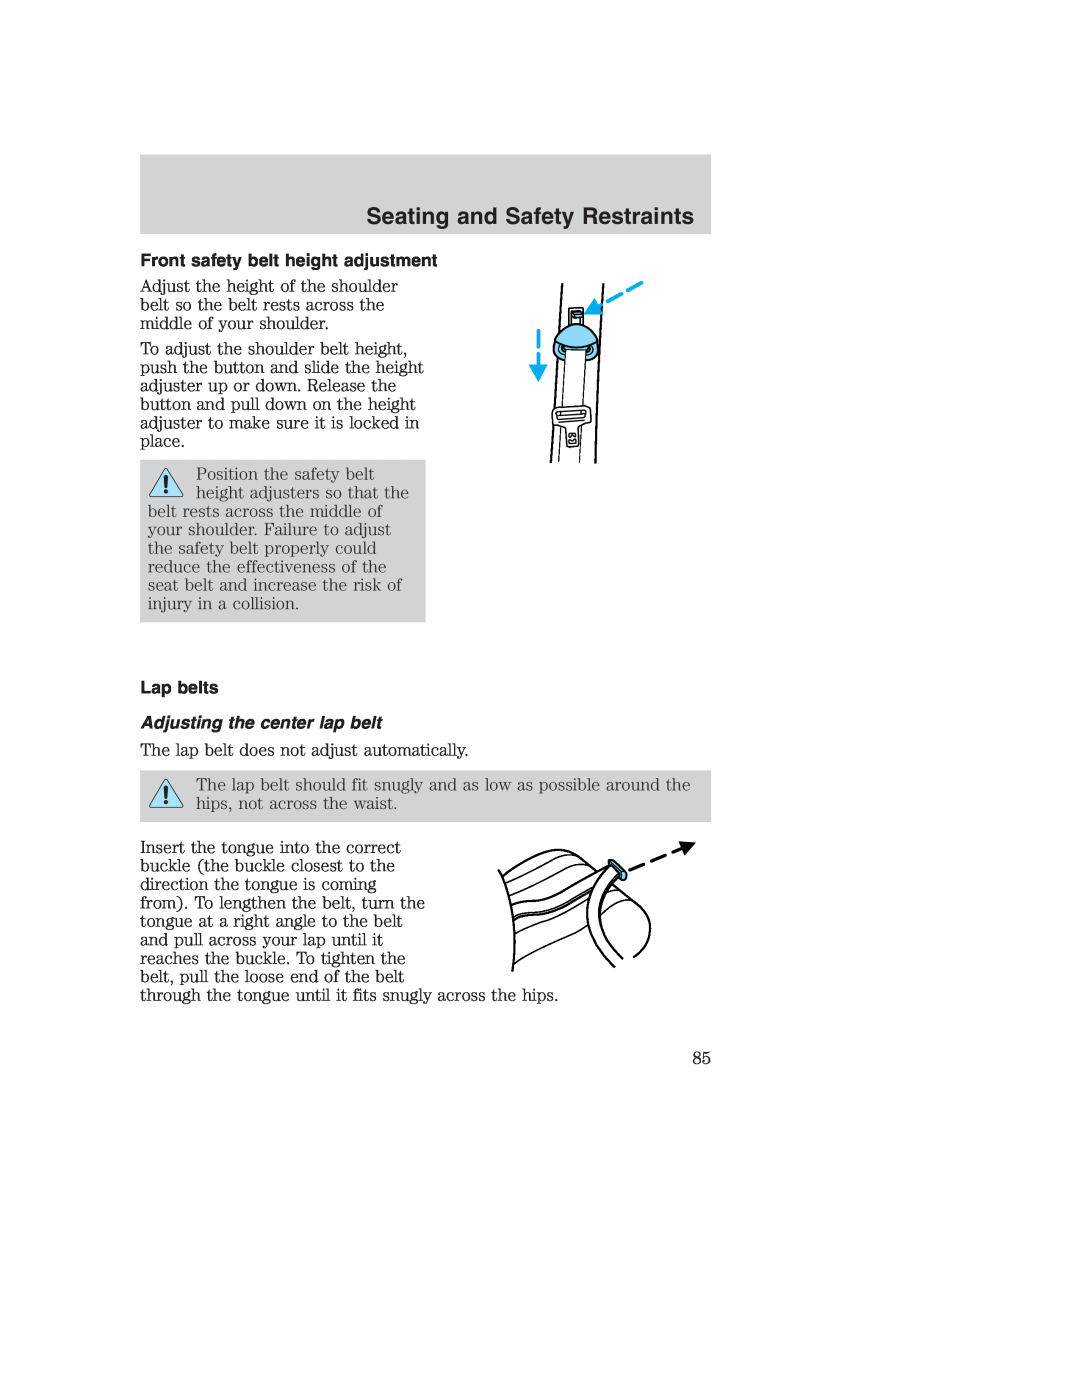 Ford AM/FM stereo manual Front safety belt height adjustment, Lap belts, Adjusting the center lap belt 